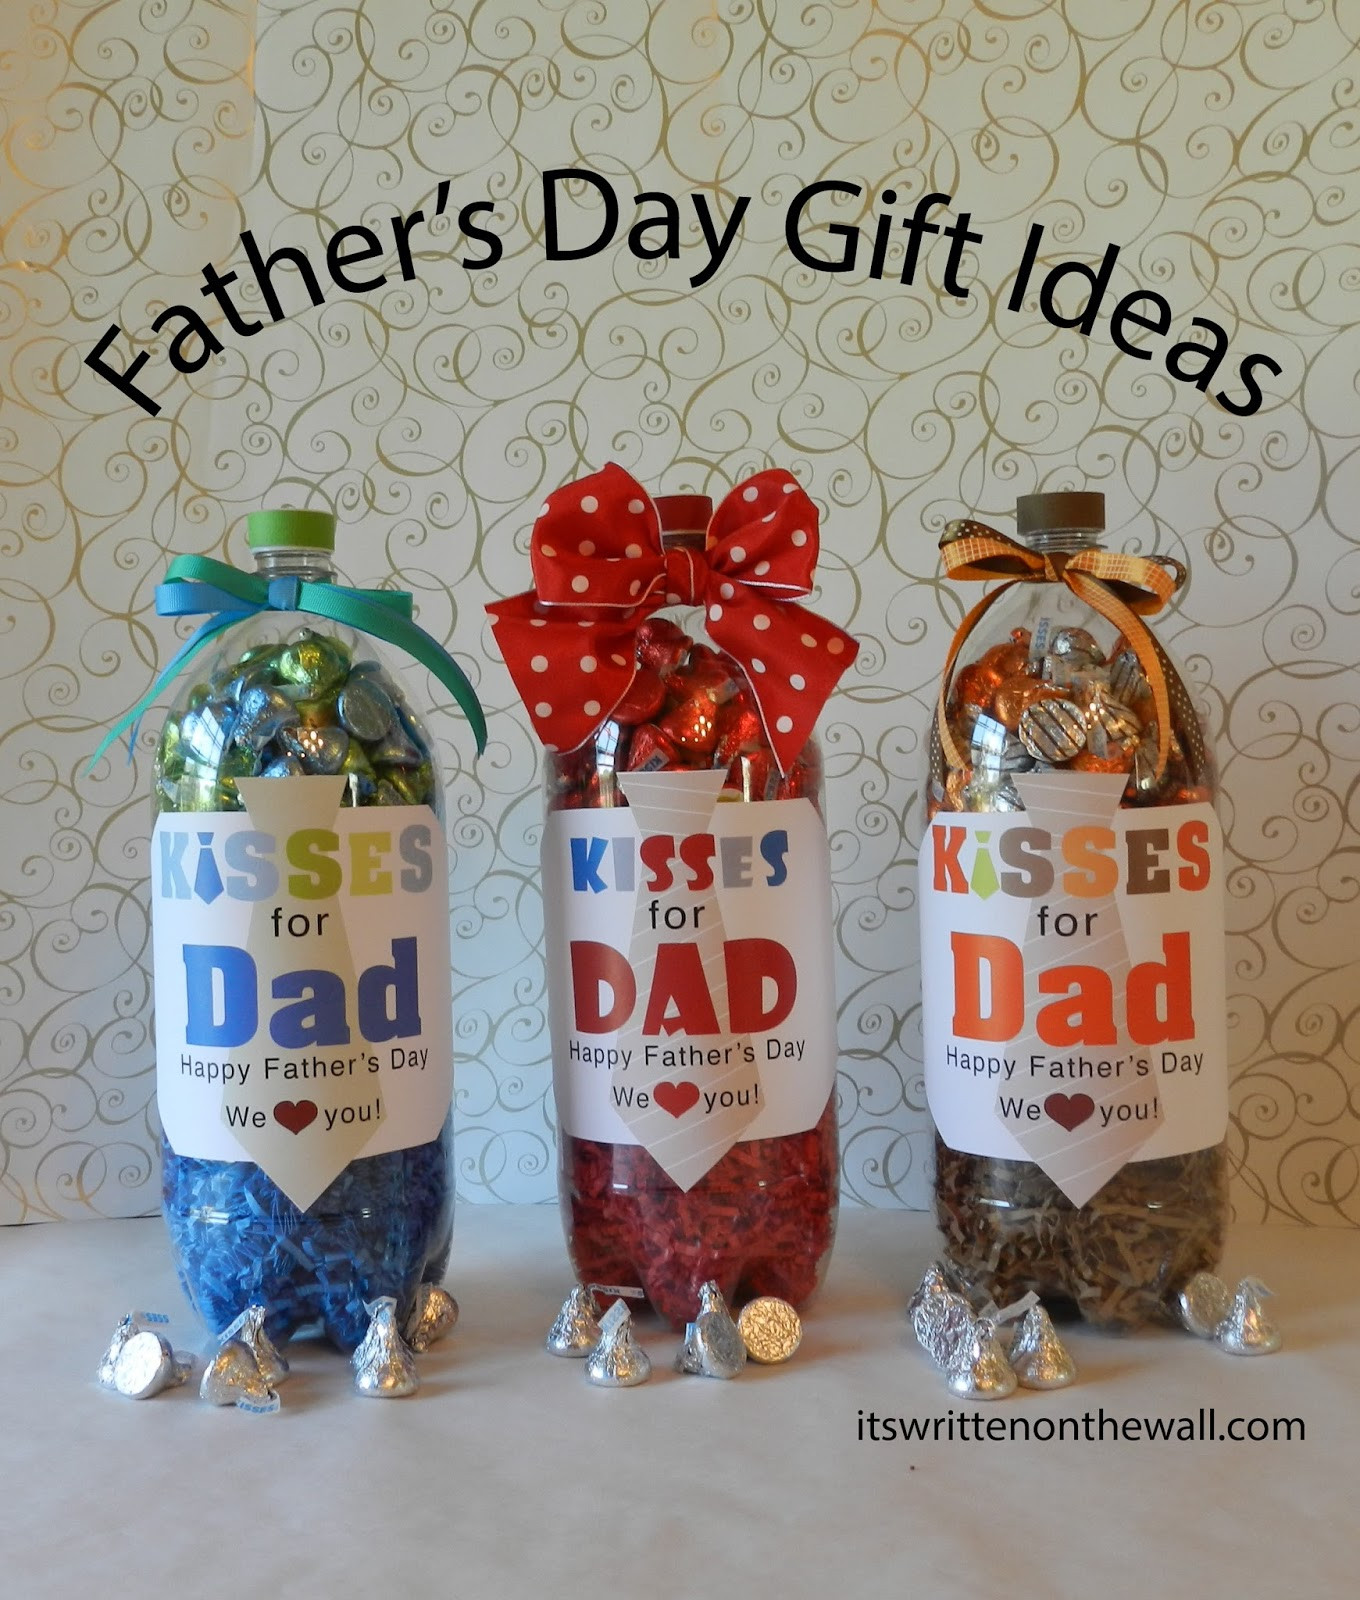 Walmart Fathers Day Gift Ideas
 It s Written on the Wall Fathers Day Gift Ideas For the